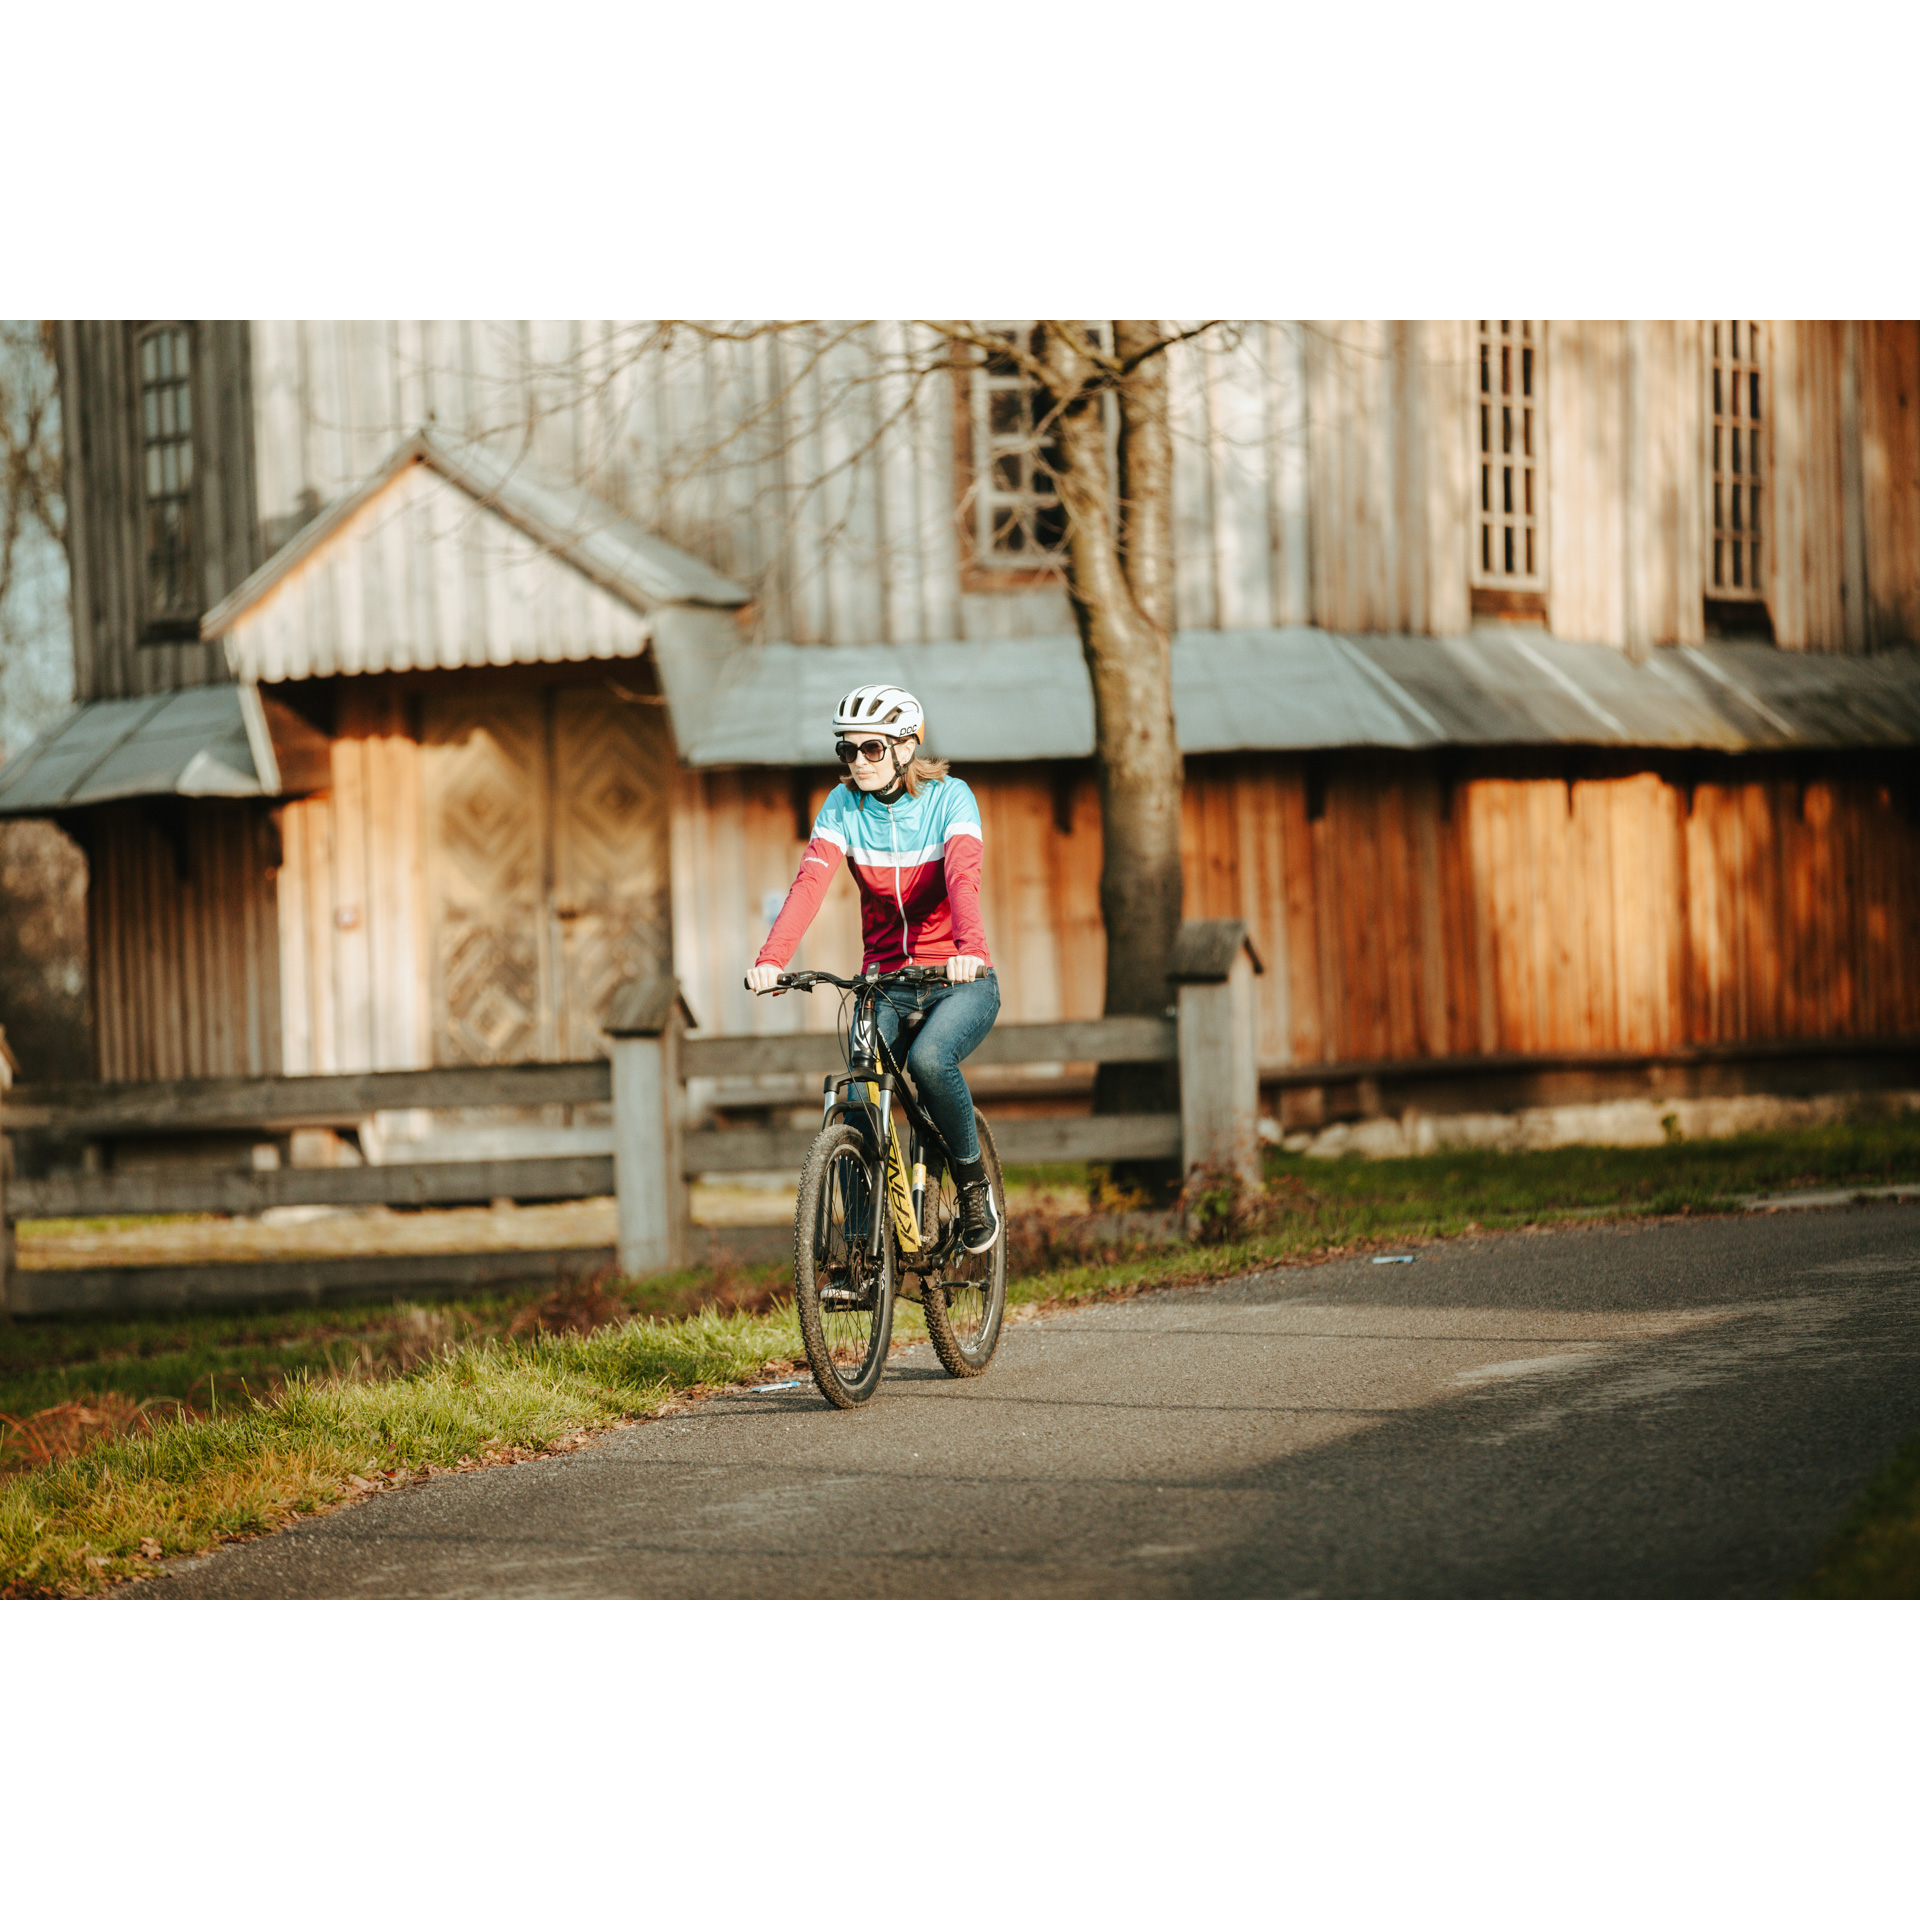 Rowerzystka w czerwono-niebieskiej kurtce i kasku jadąca rowerem po asfaltowej drodze, mijająca drewniany budynek kościoła